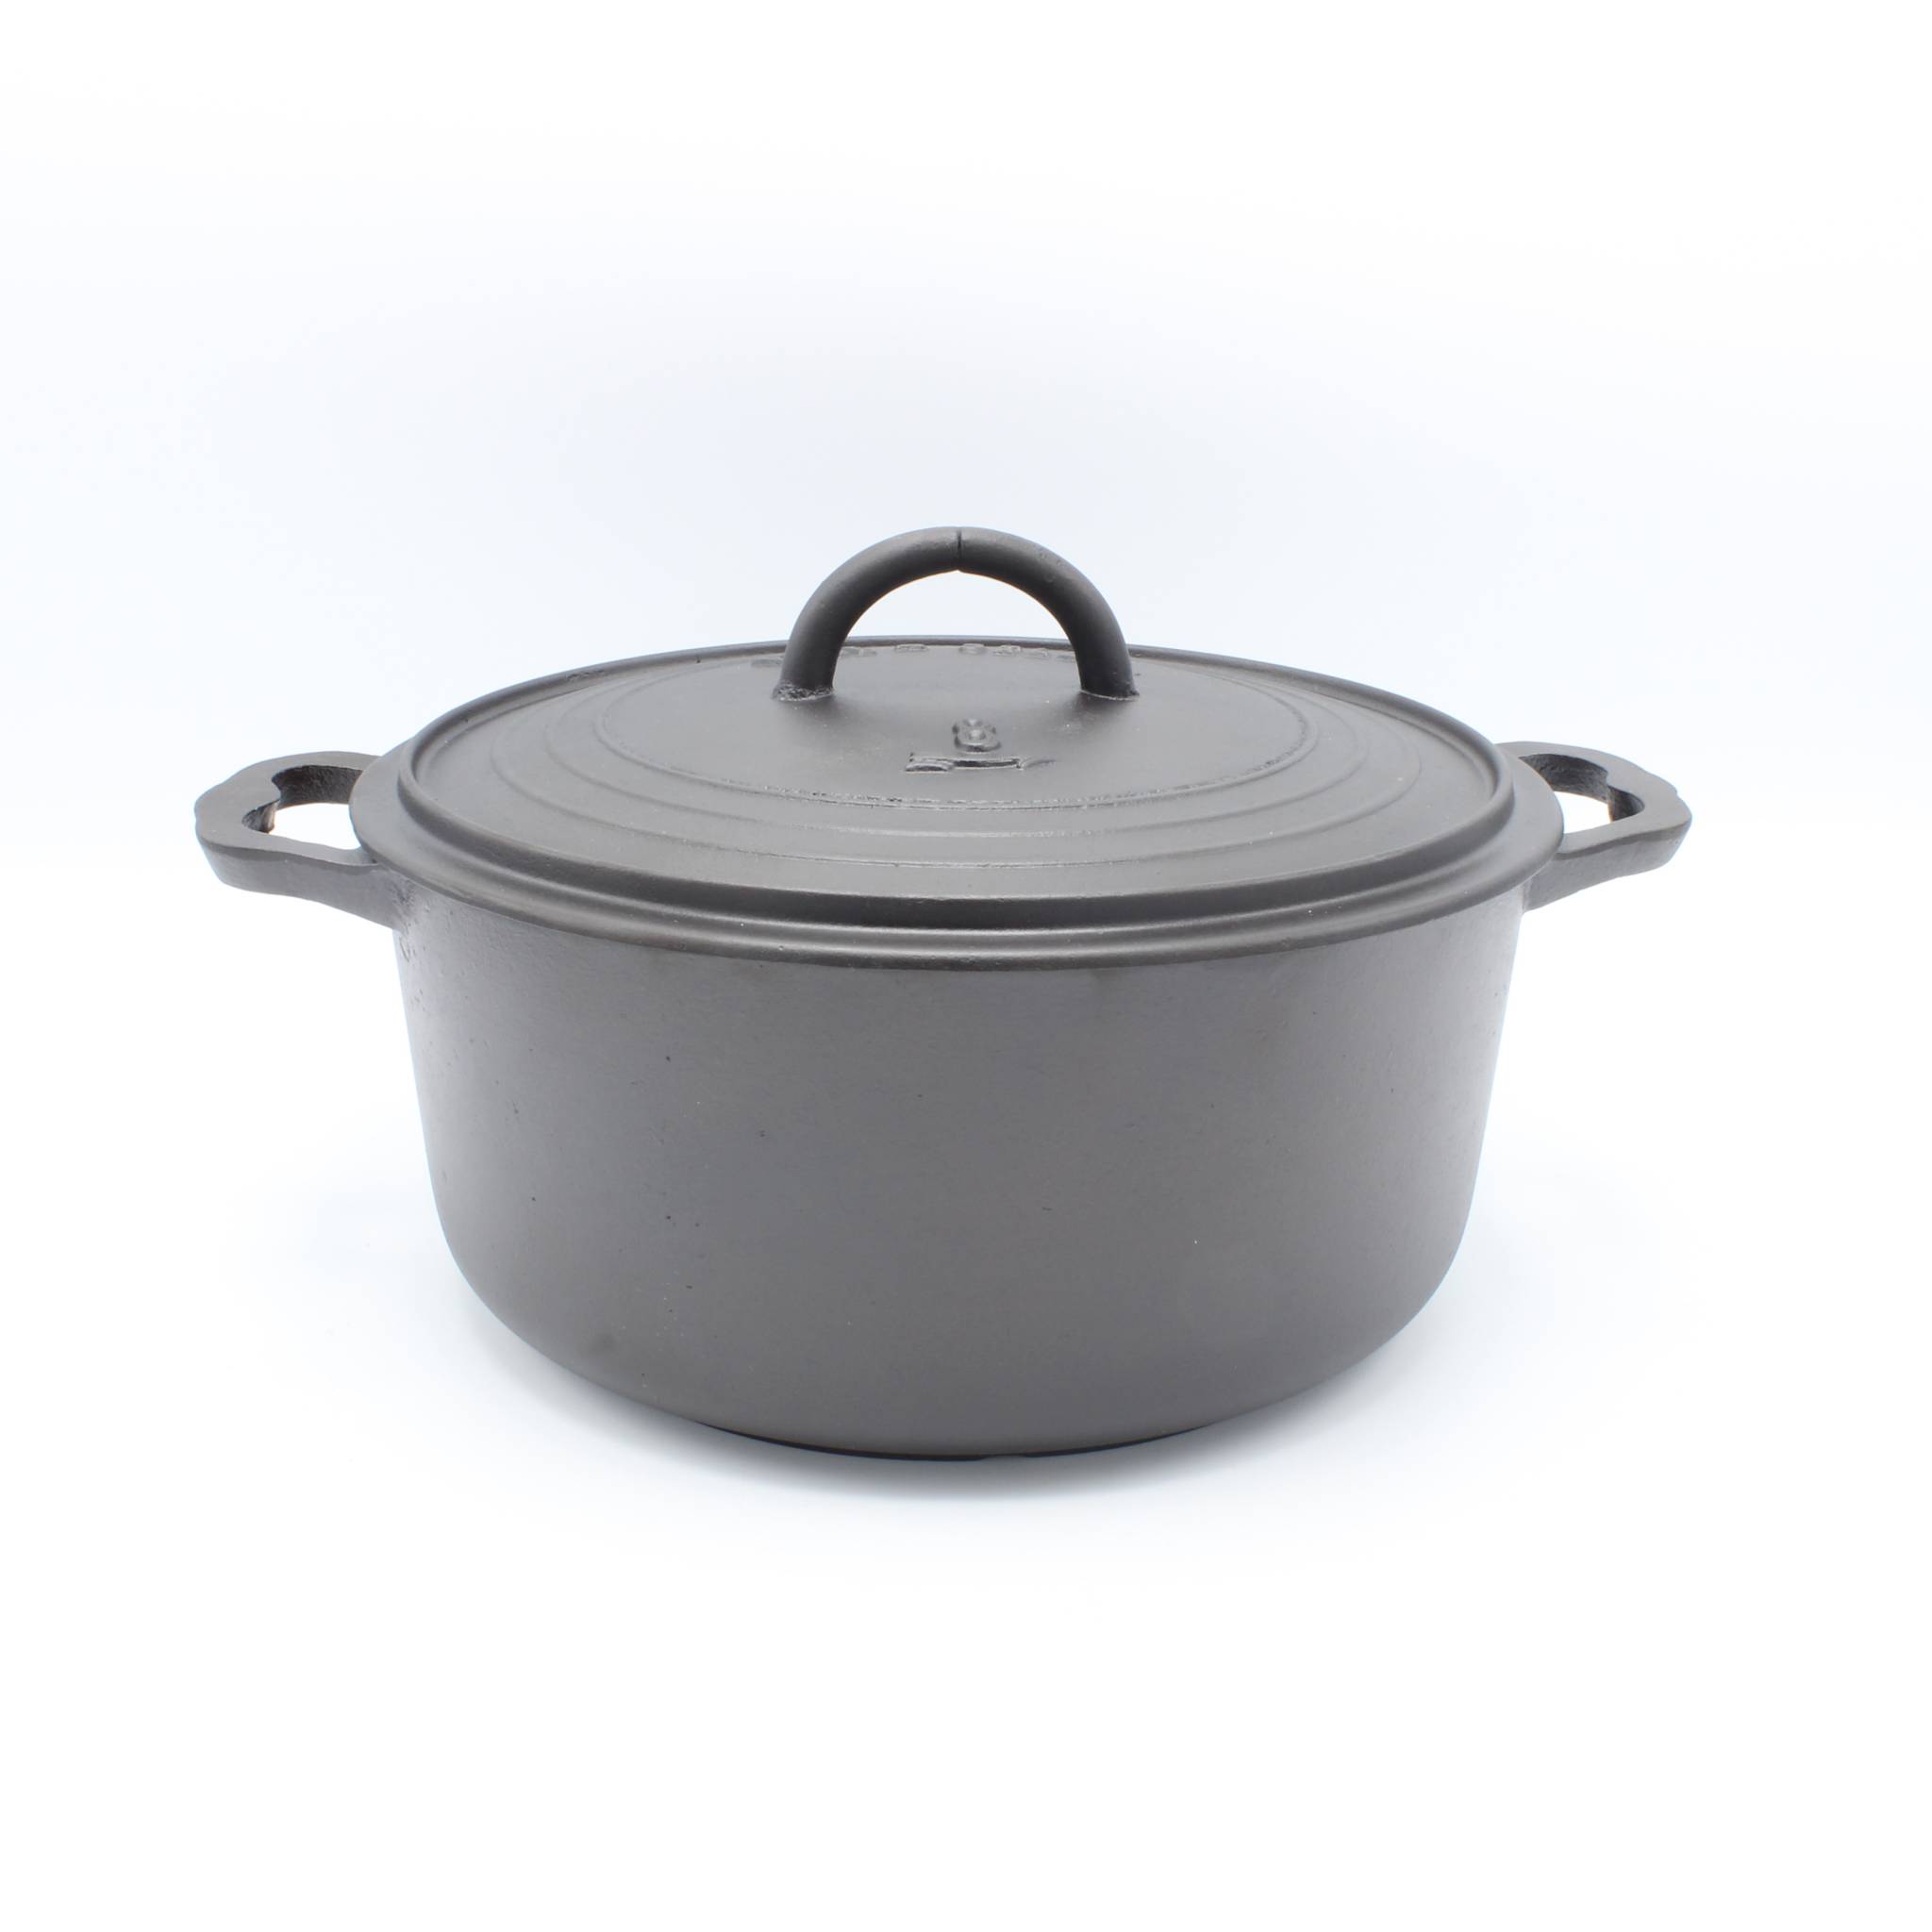 Memo vredig Hechting Pied-Selle gietijzeren braadpan Dutch oven, seasoned, zwart 23 cm • Gaer  Cookware